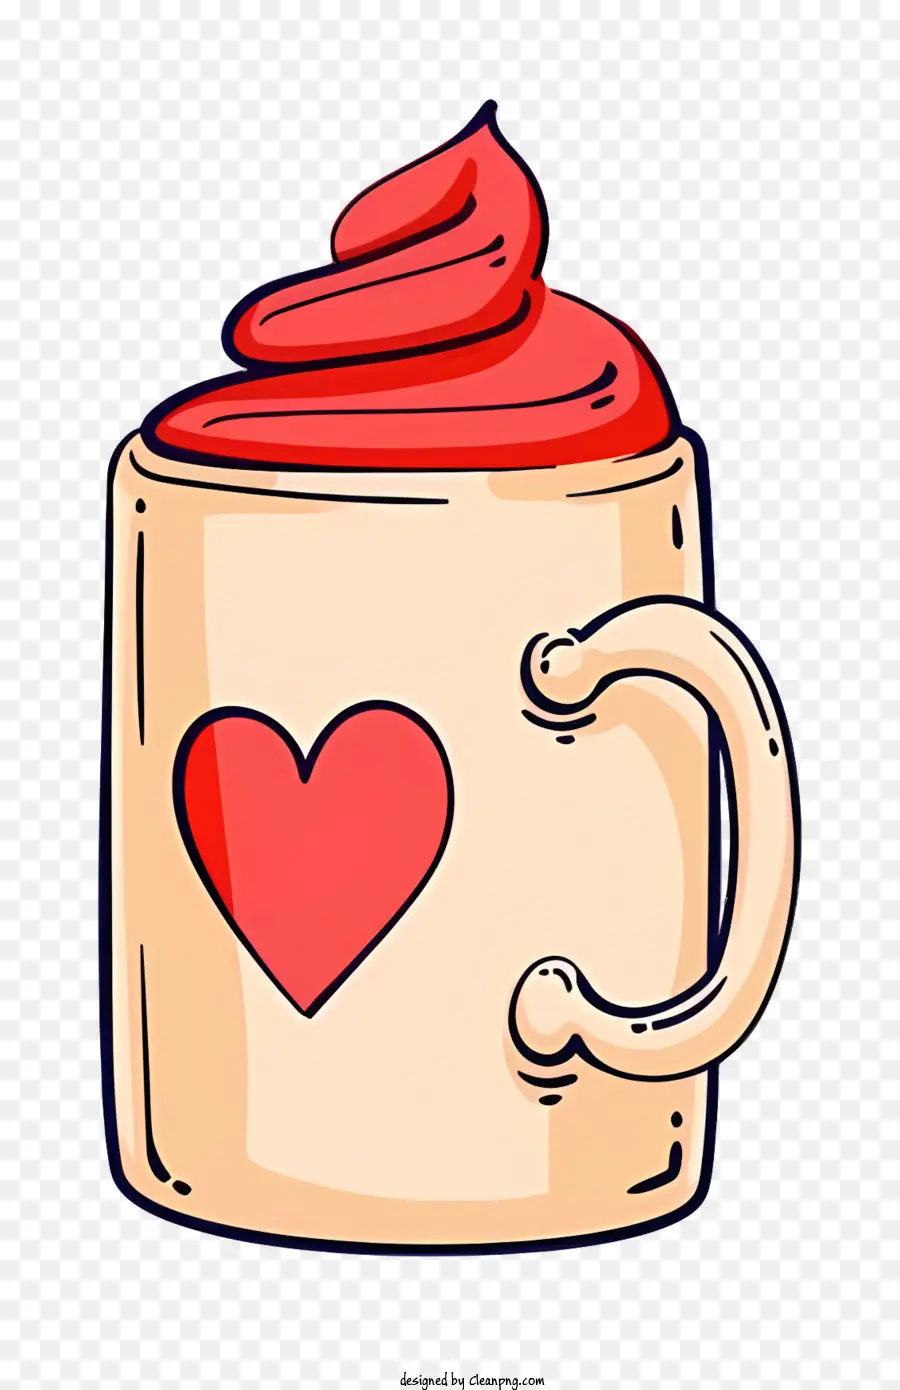 Herz symbol - Red Cup mit Herz symbolisiert Liebe und Leidenschaft